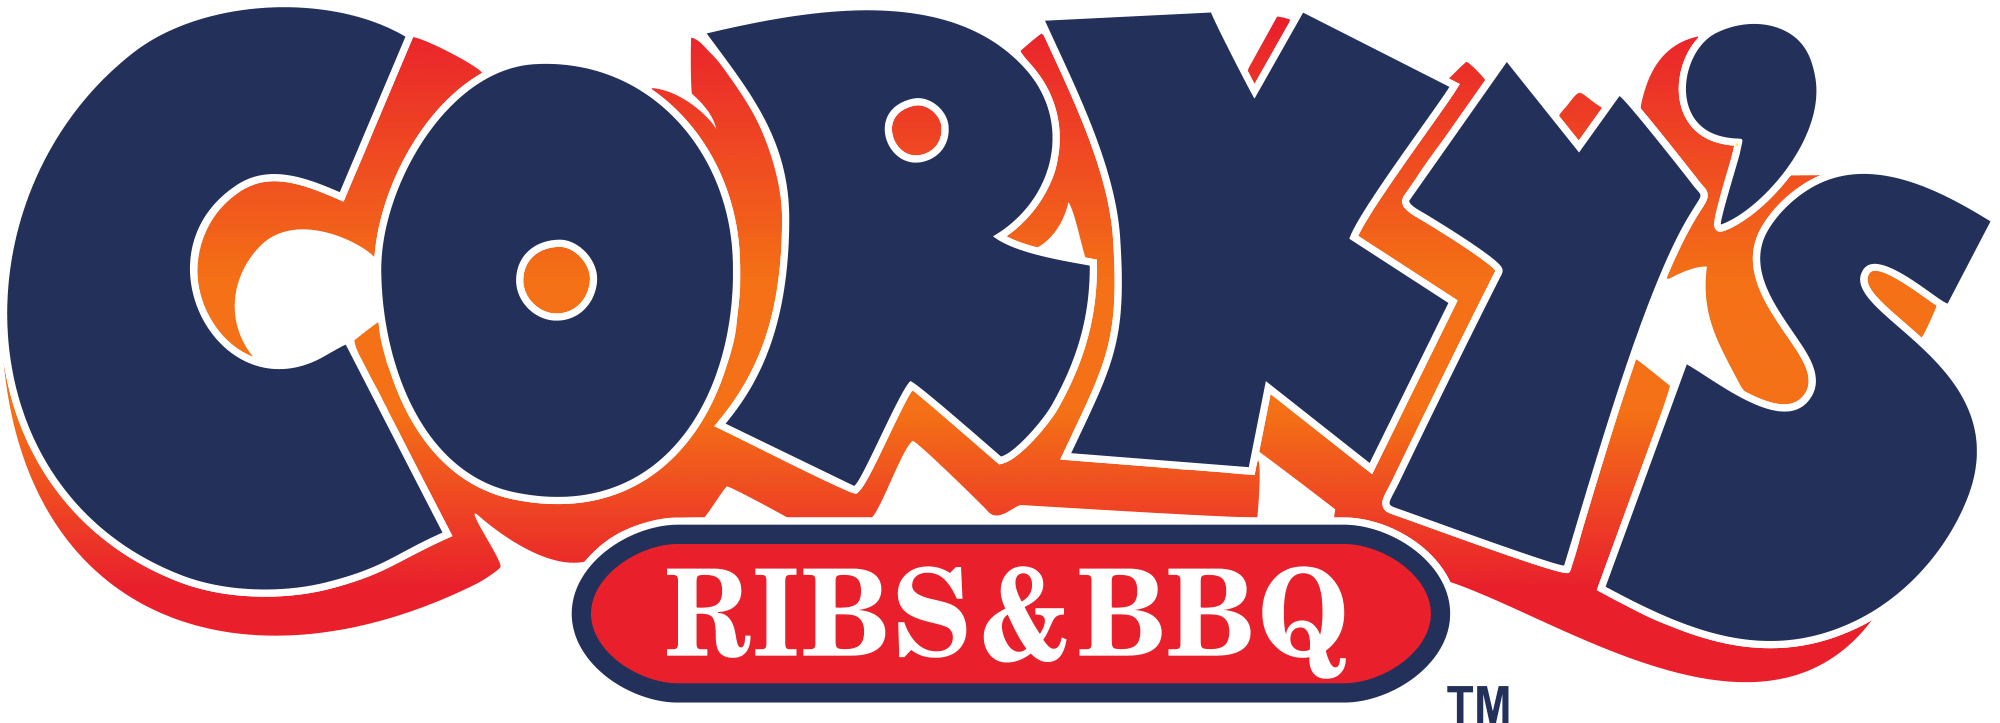 Corky's Logo - Corky's BBQ | Friends Life Community